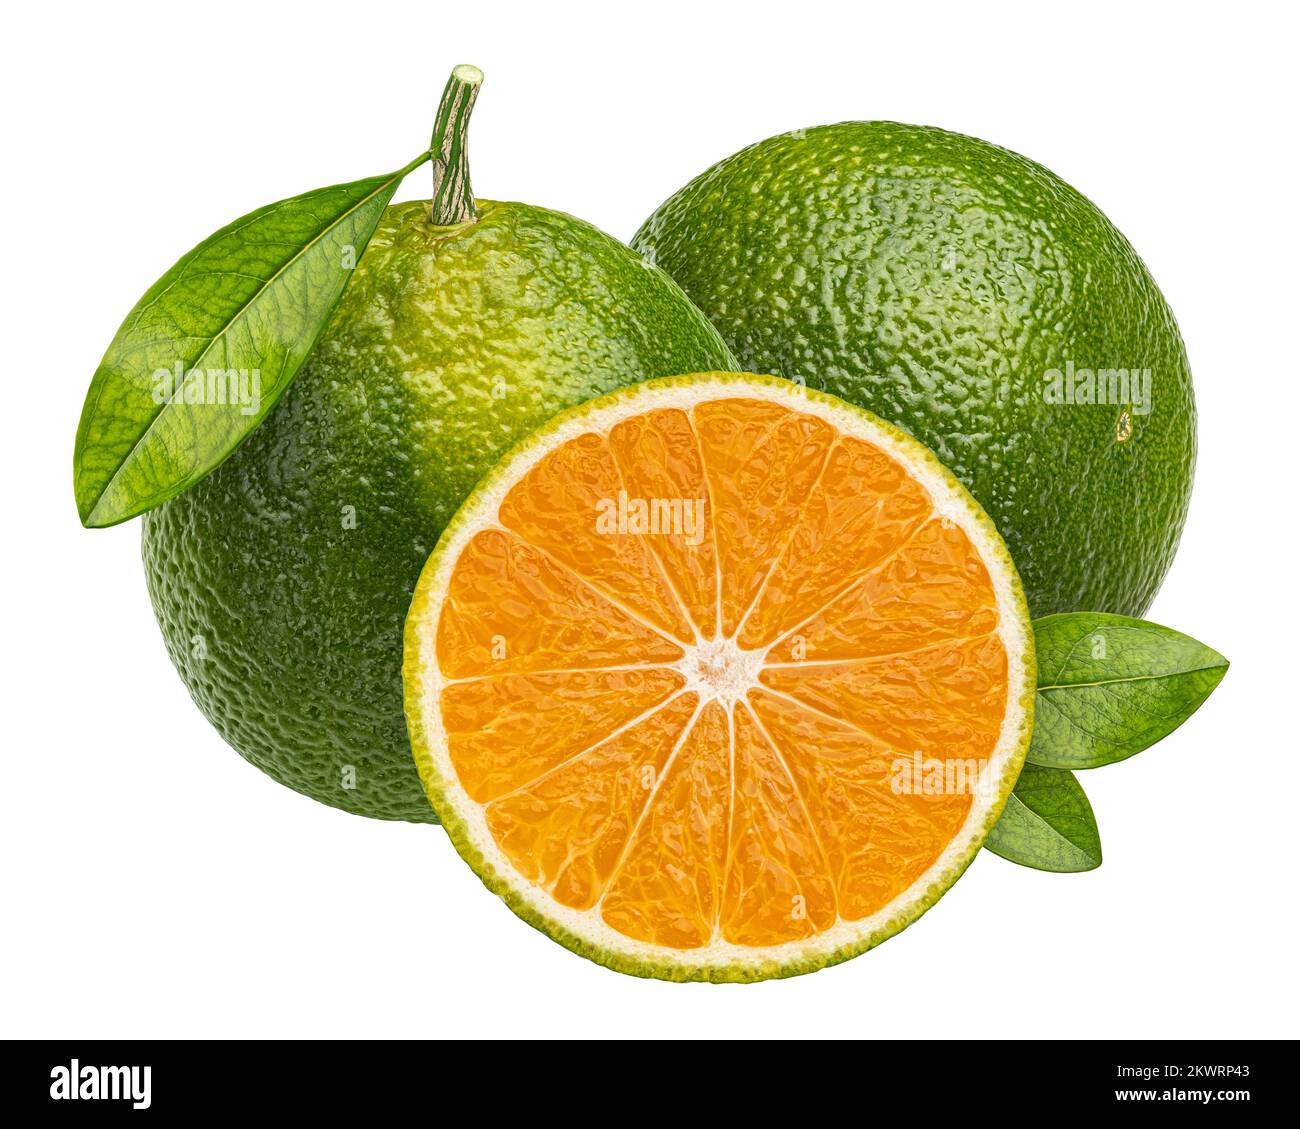 Green tangerine isolated on white background, full depth of field Stock ...